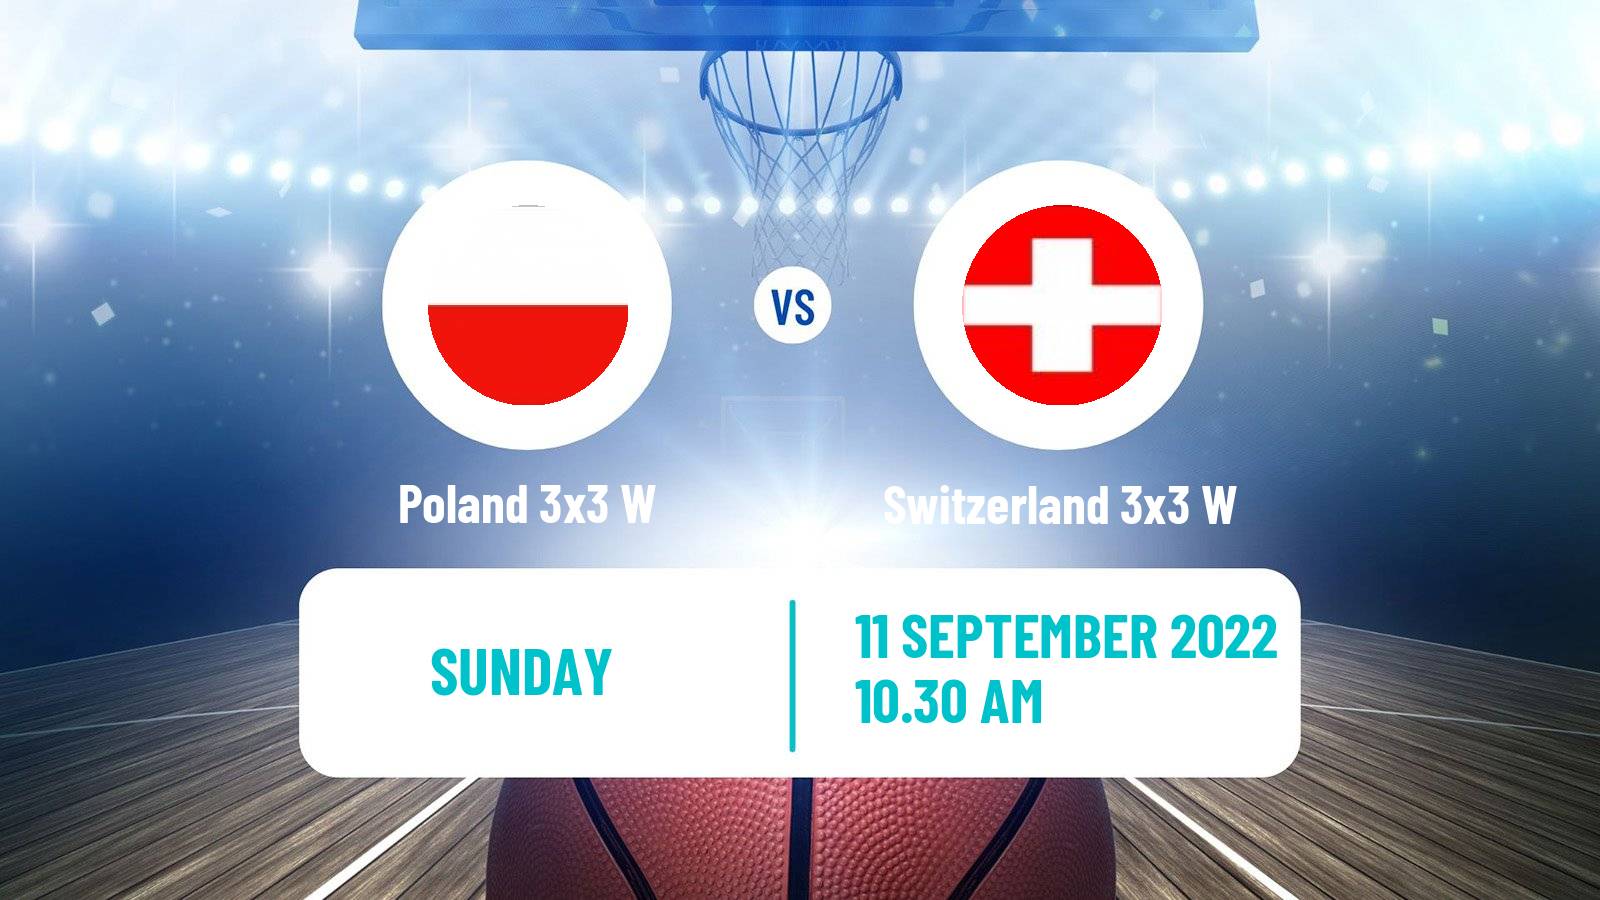 Basketball Europe Cup Basketball 3x3 Women Poland 3x3 W - Switzerland 3x3 W